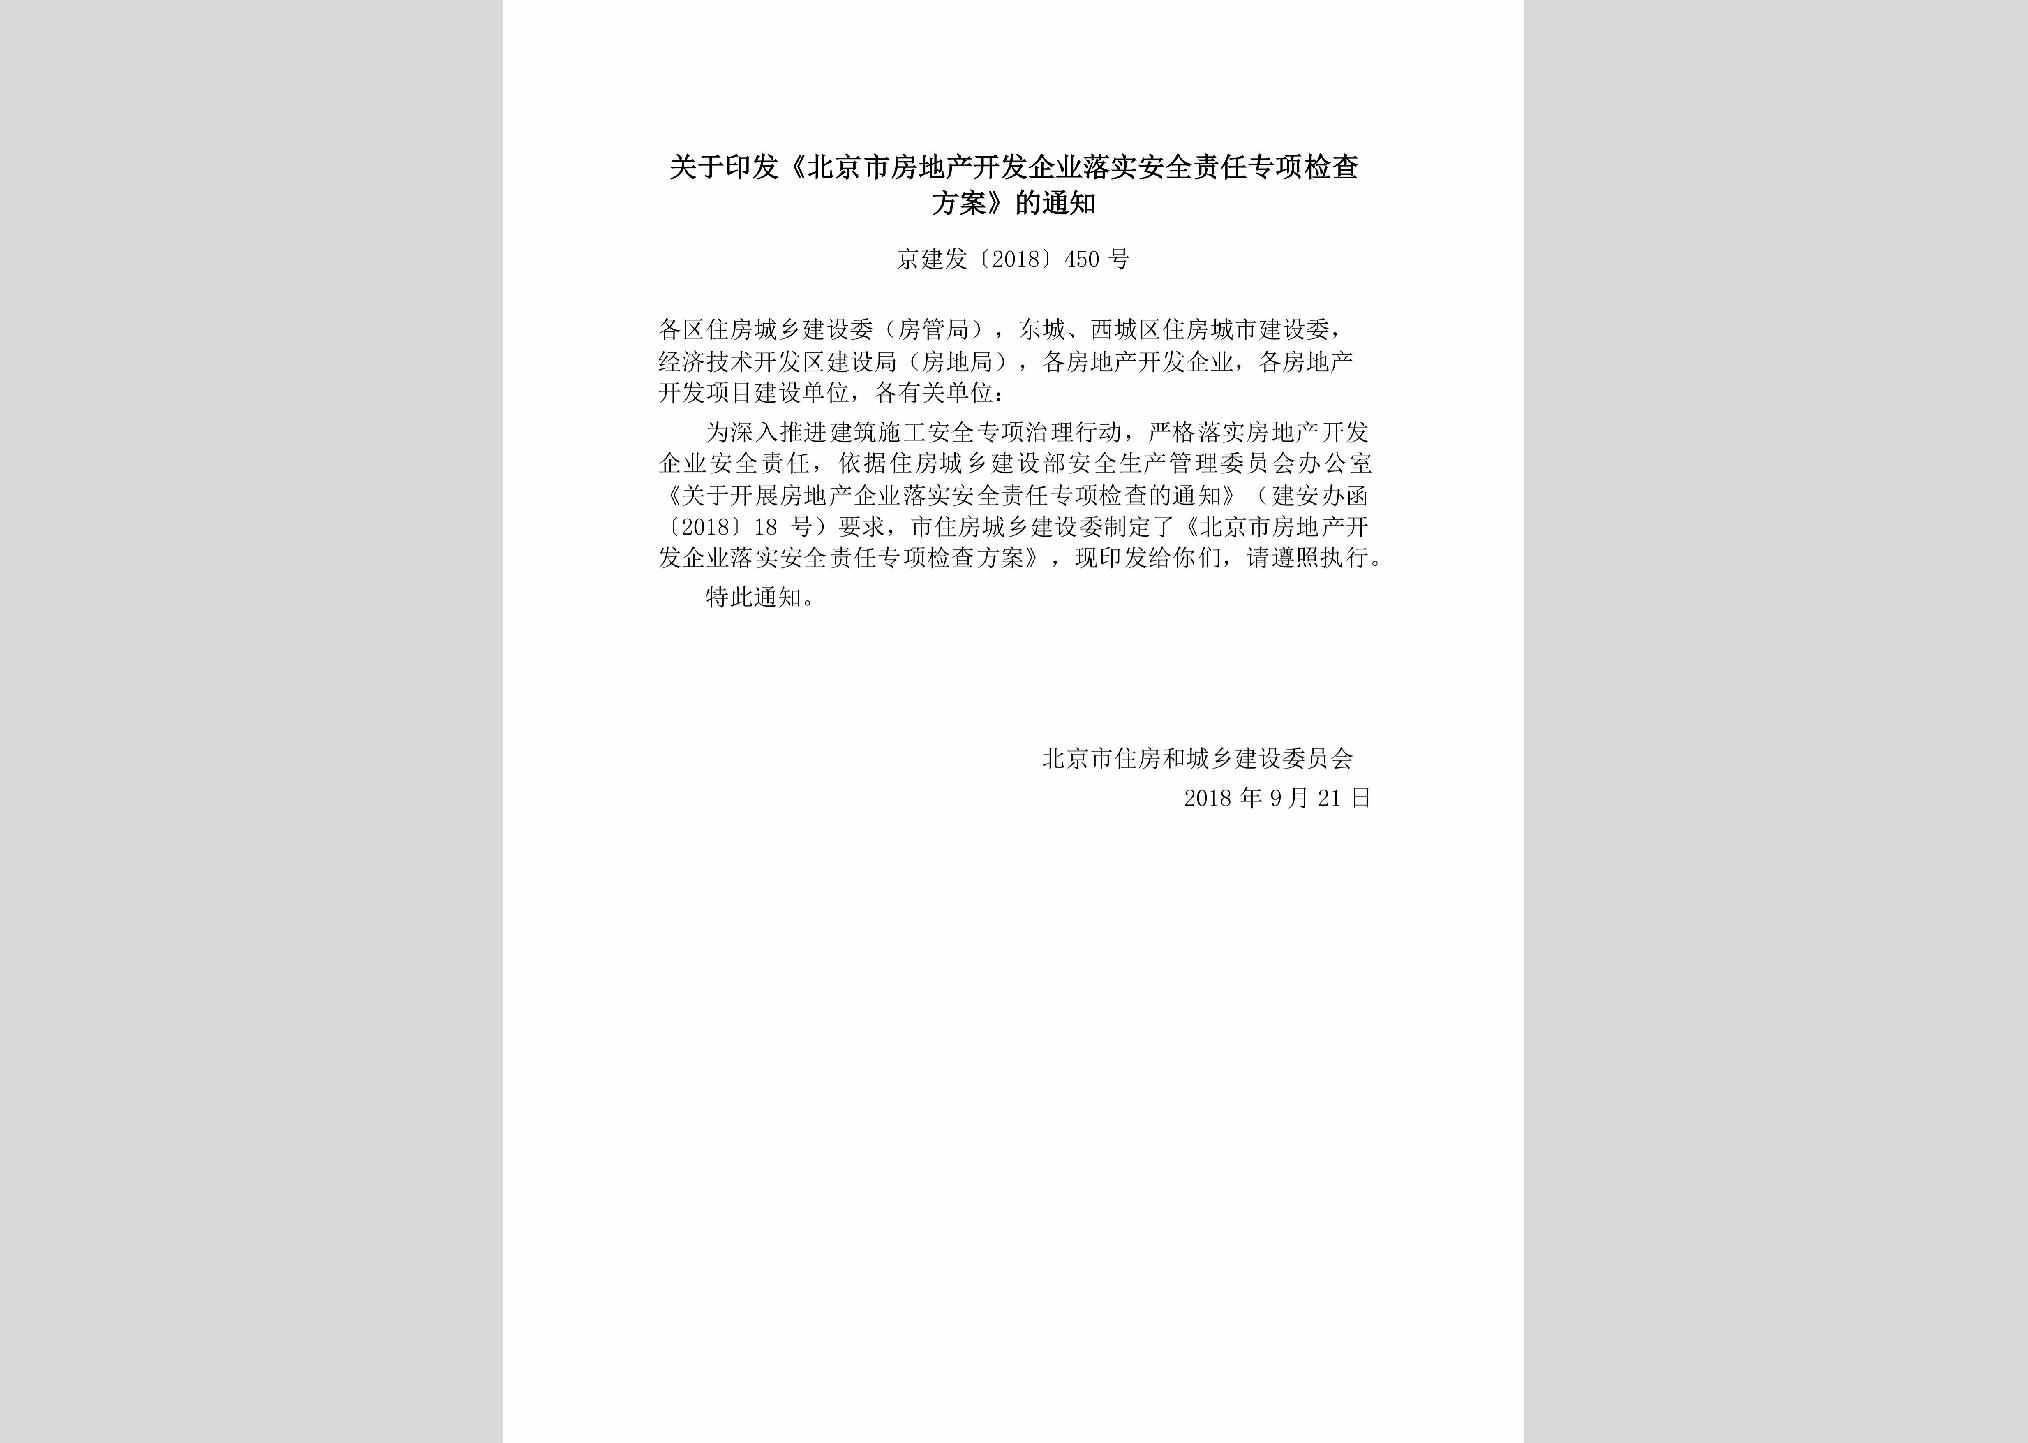 京建发[2018]450号：关于印发《北京市房地产开发企业落实安全责任专项检查方案》的通知